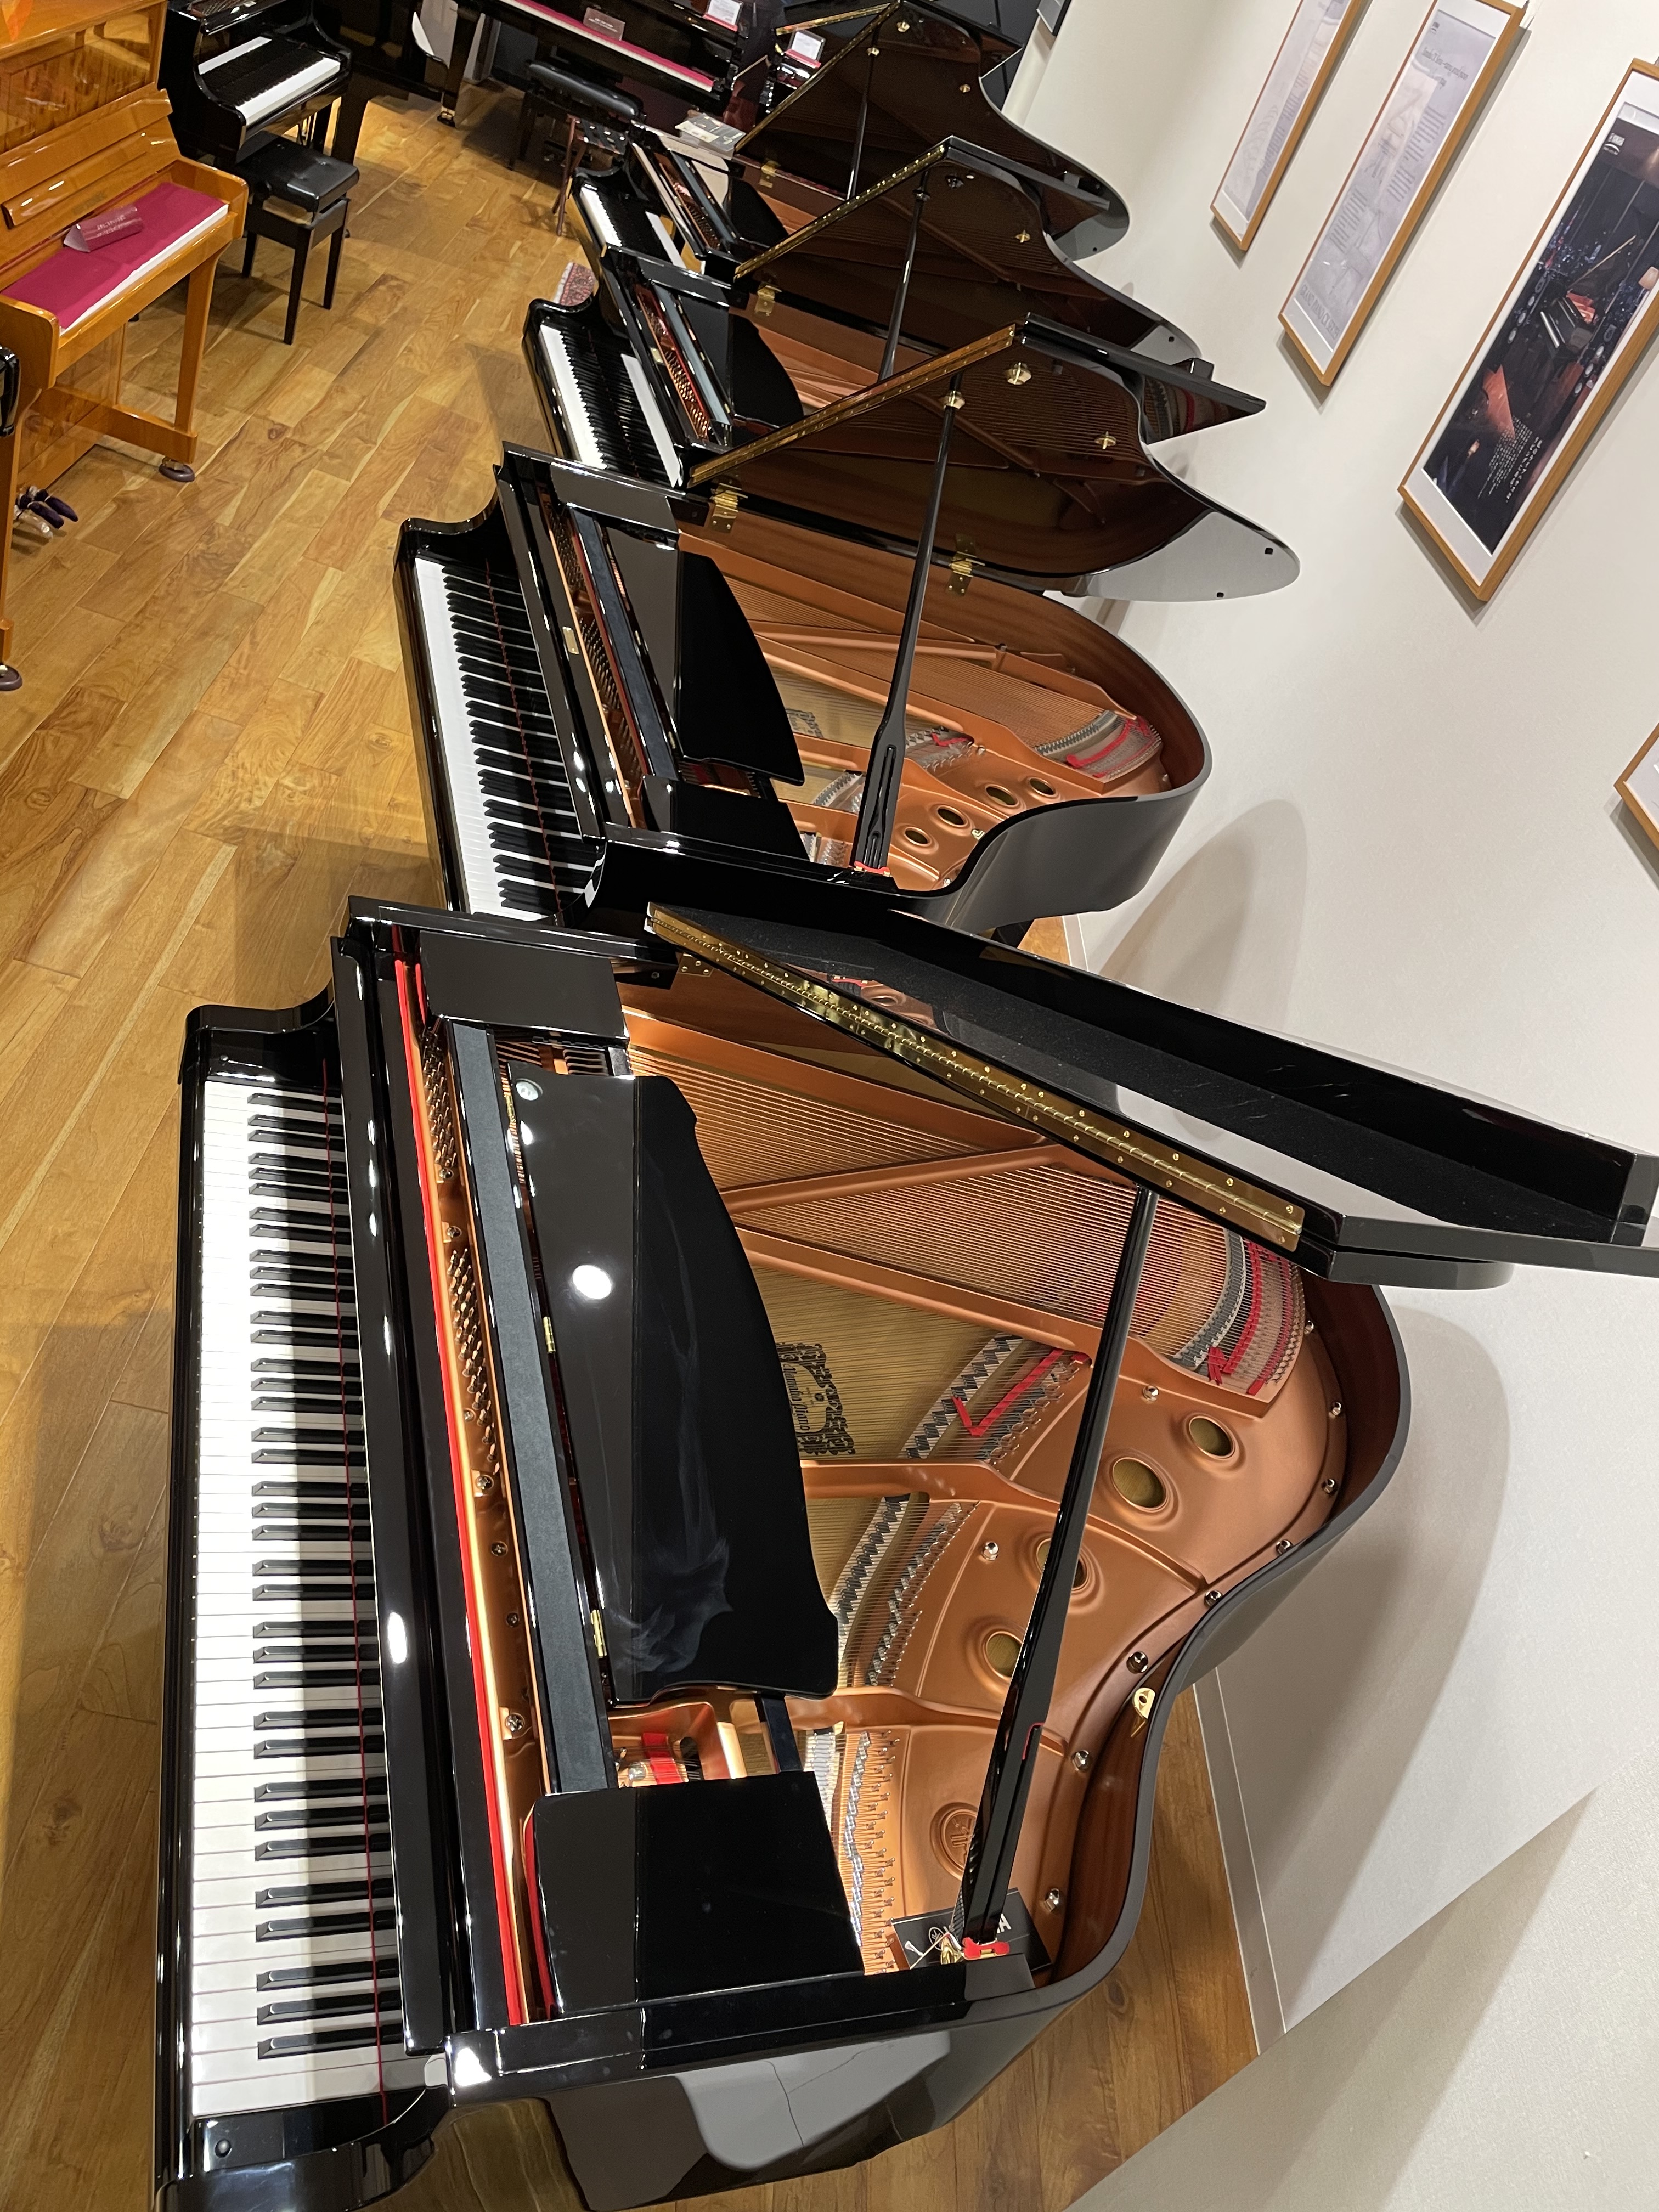 ヤマハ Yamaha グランドピアノのおすすめ 特徴をピアノ専門スタッフがご紹介 ピアノショールーム市川コルトンプラザ店 店舗情報 島村楽器